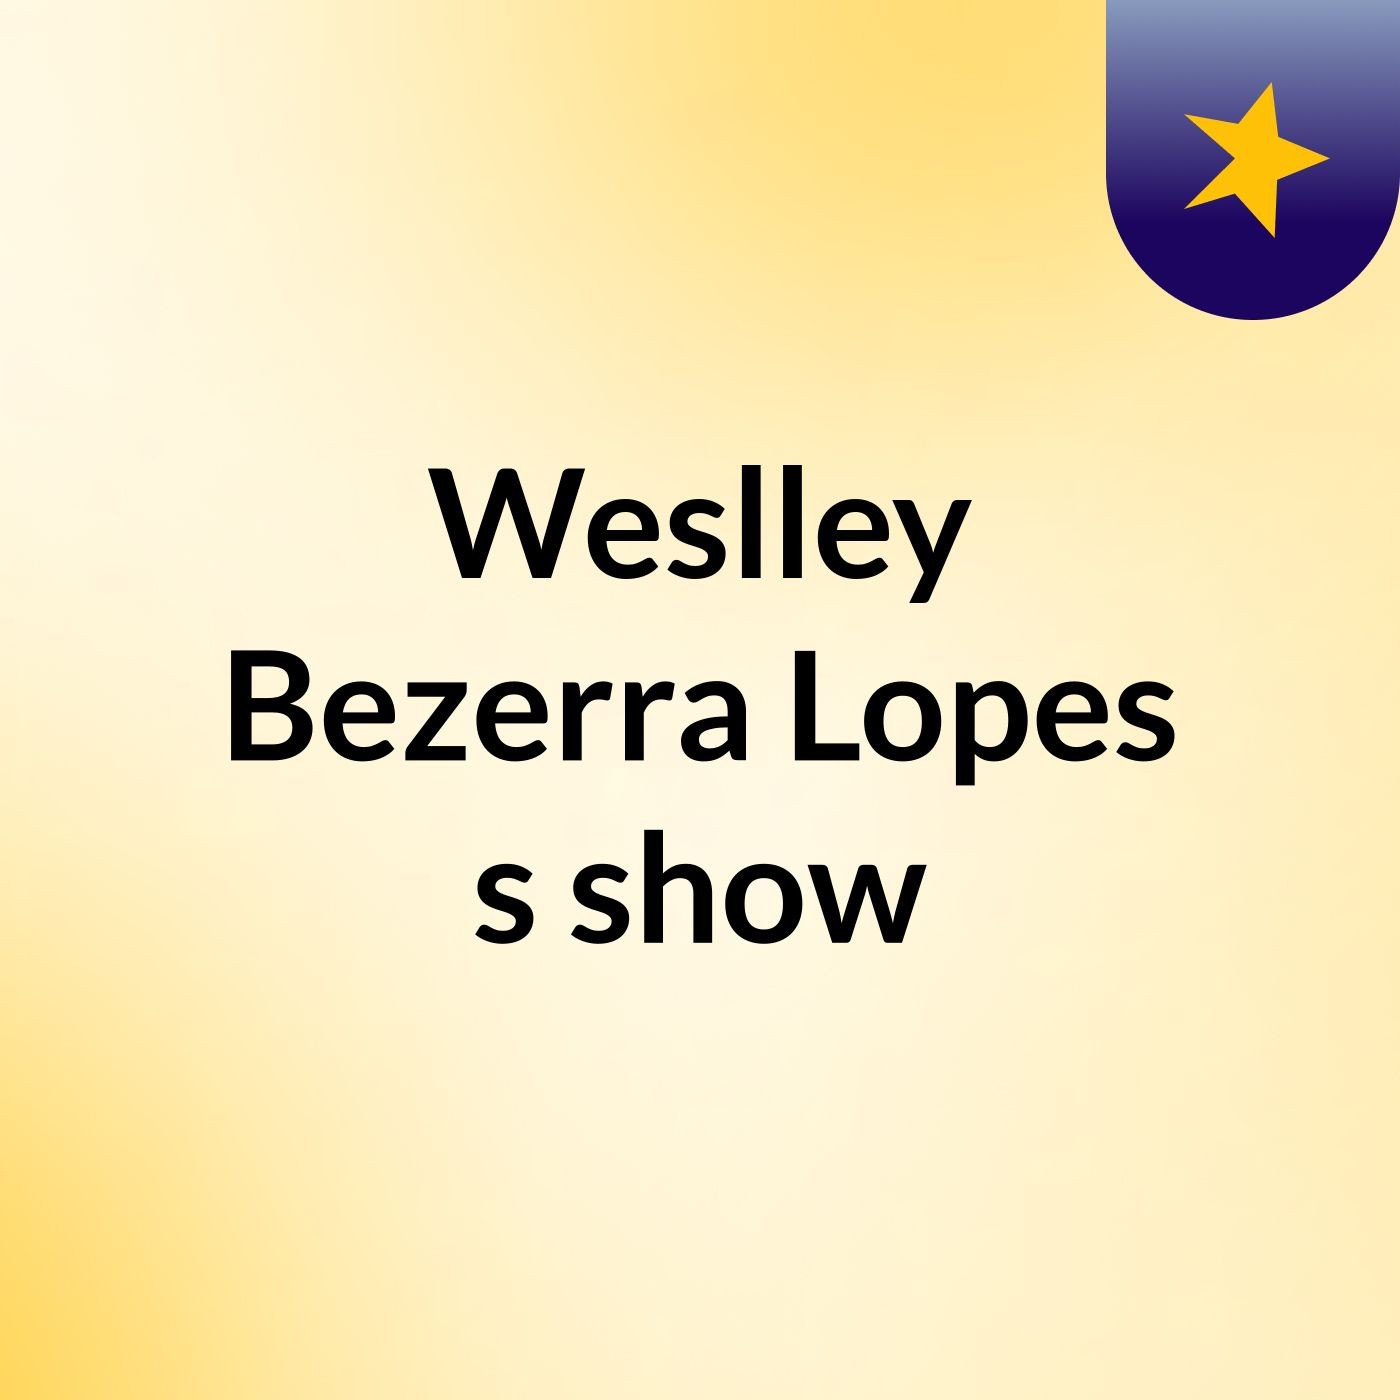 Weslley Bezerra Lopes's show